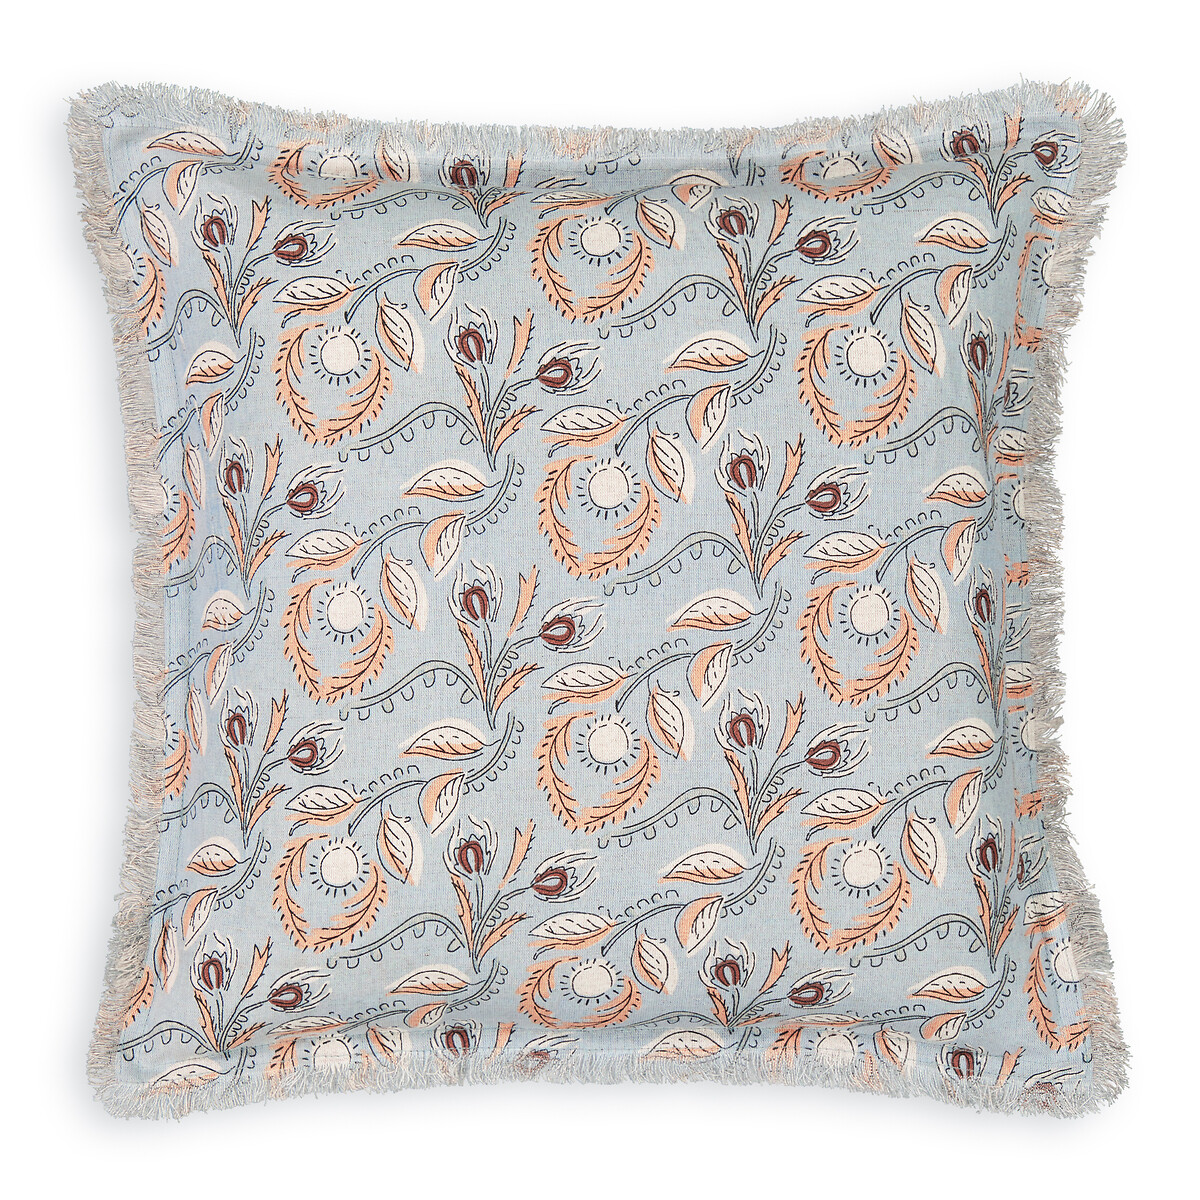 Octavine 40 x 40cm Floral Linen/Cotton Cushion Cover